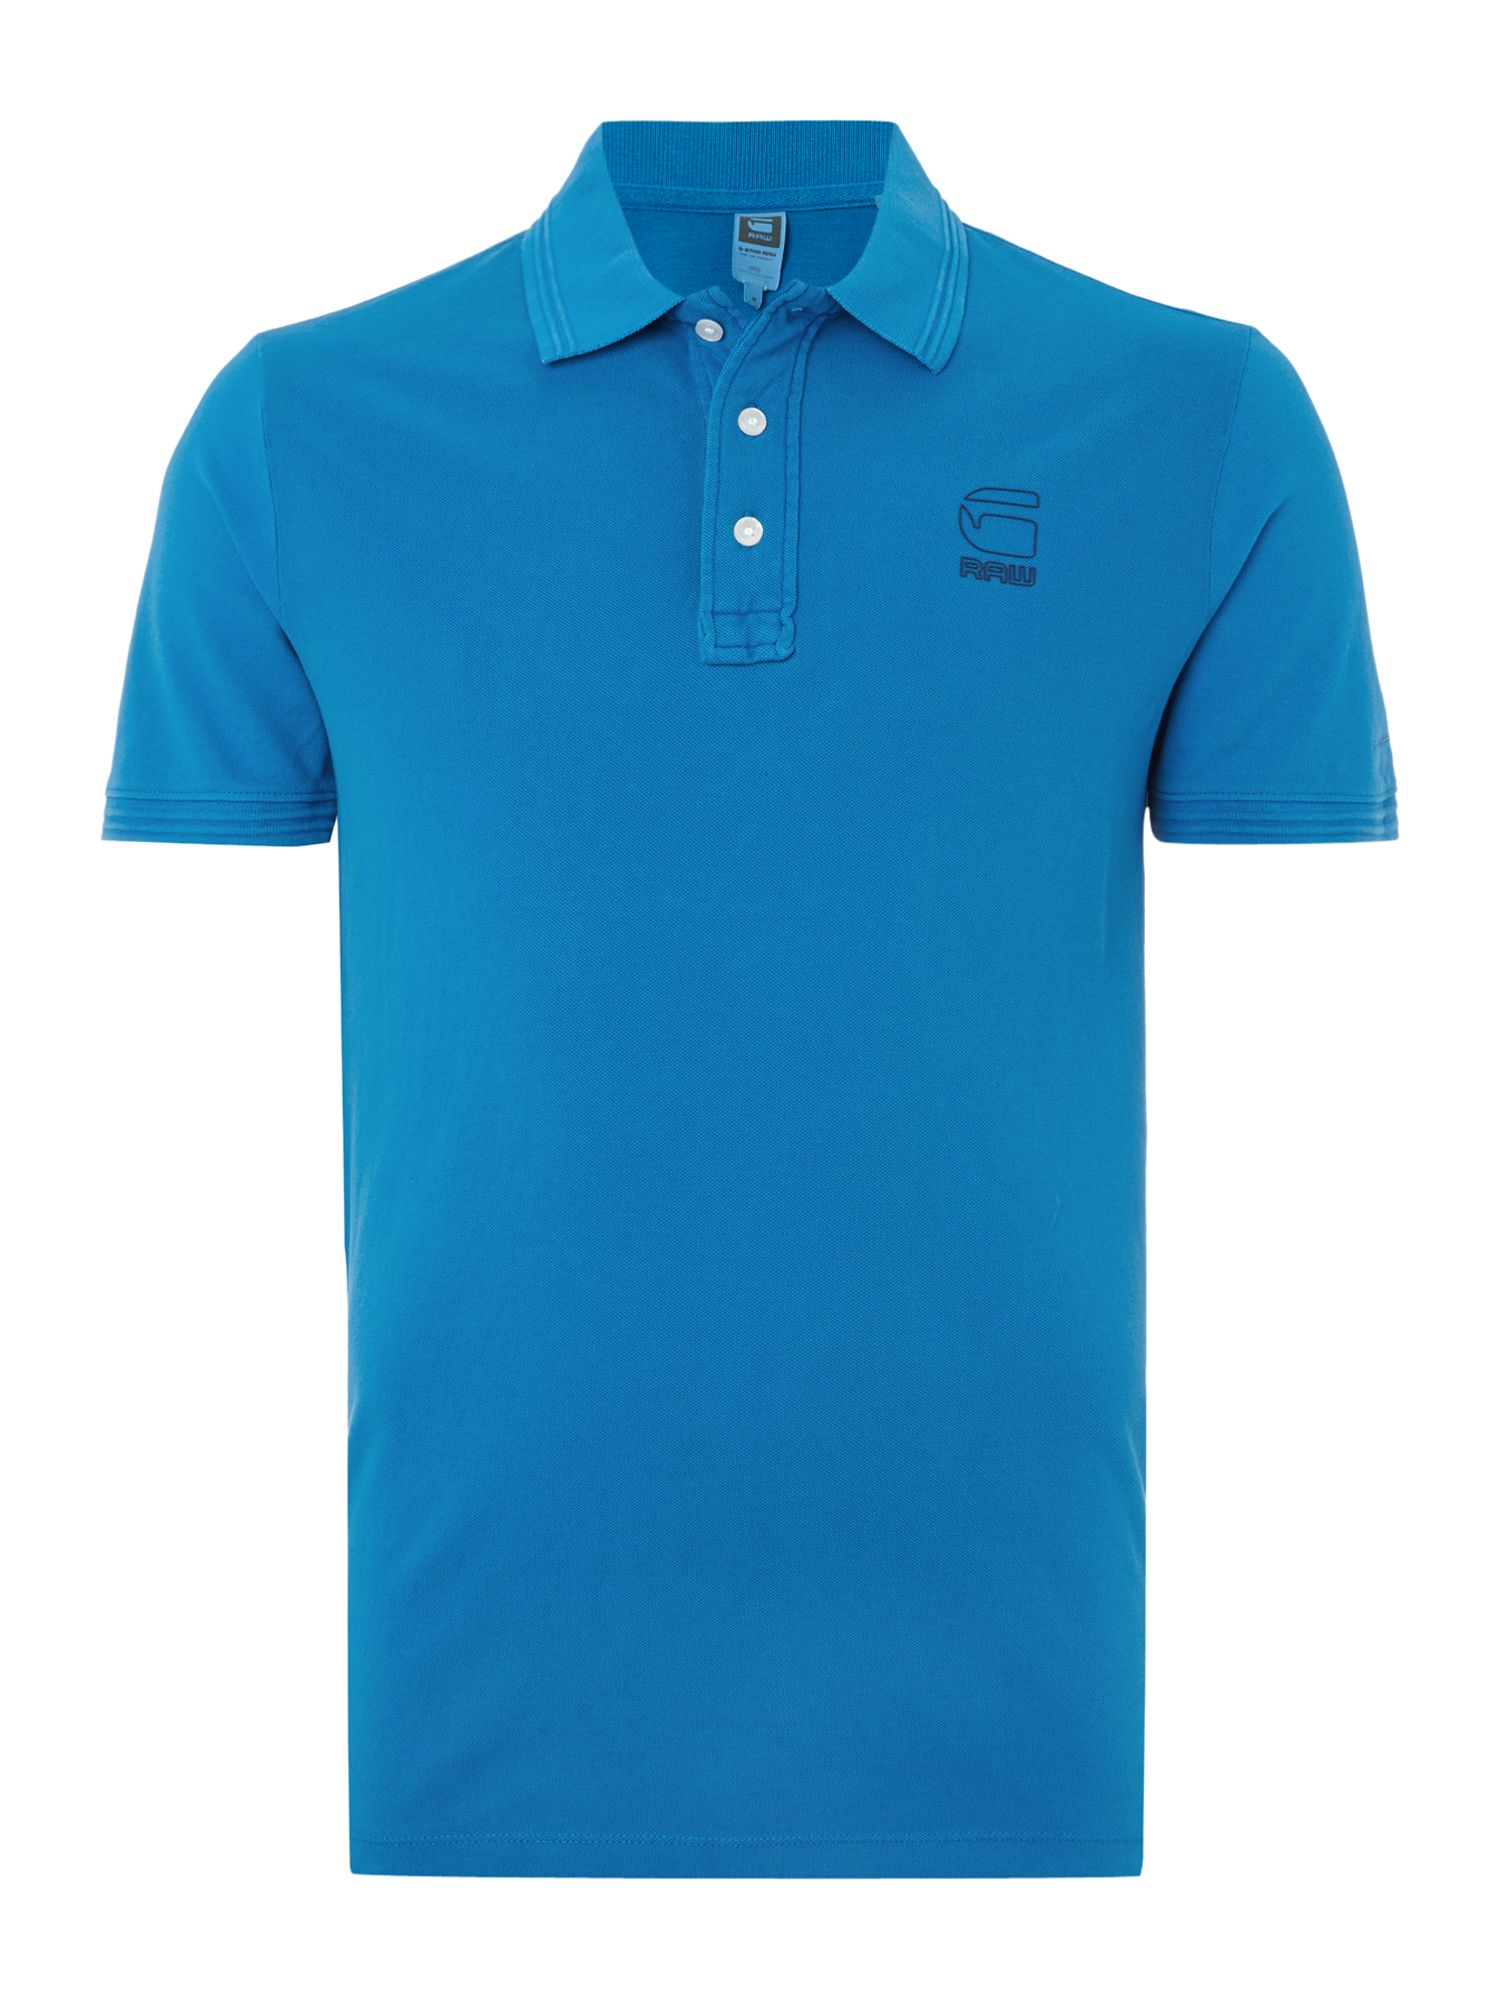 G-star raw Fero Slim Fit Polo Shirt in Blue for Men | Lyst